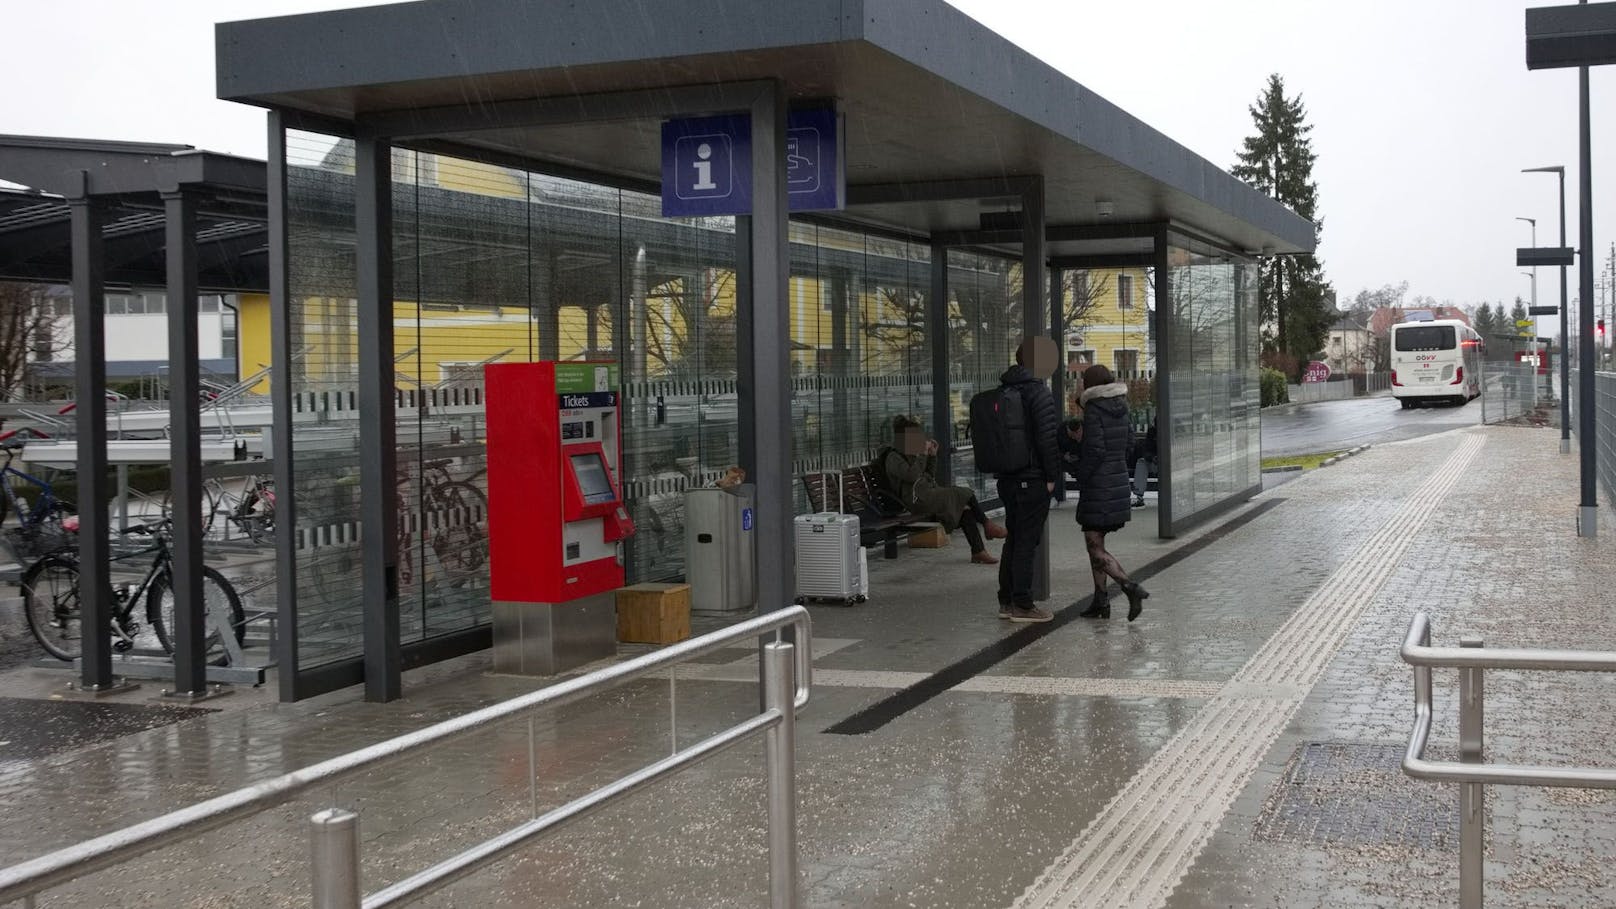 Bahnhof ohne Klo eröffnet – Gäste stinksauer auf ÖBB